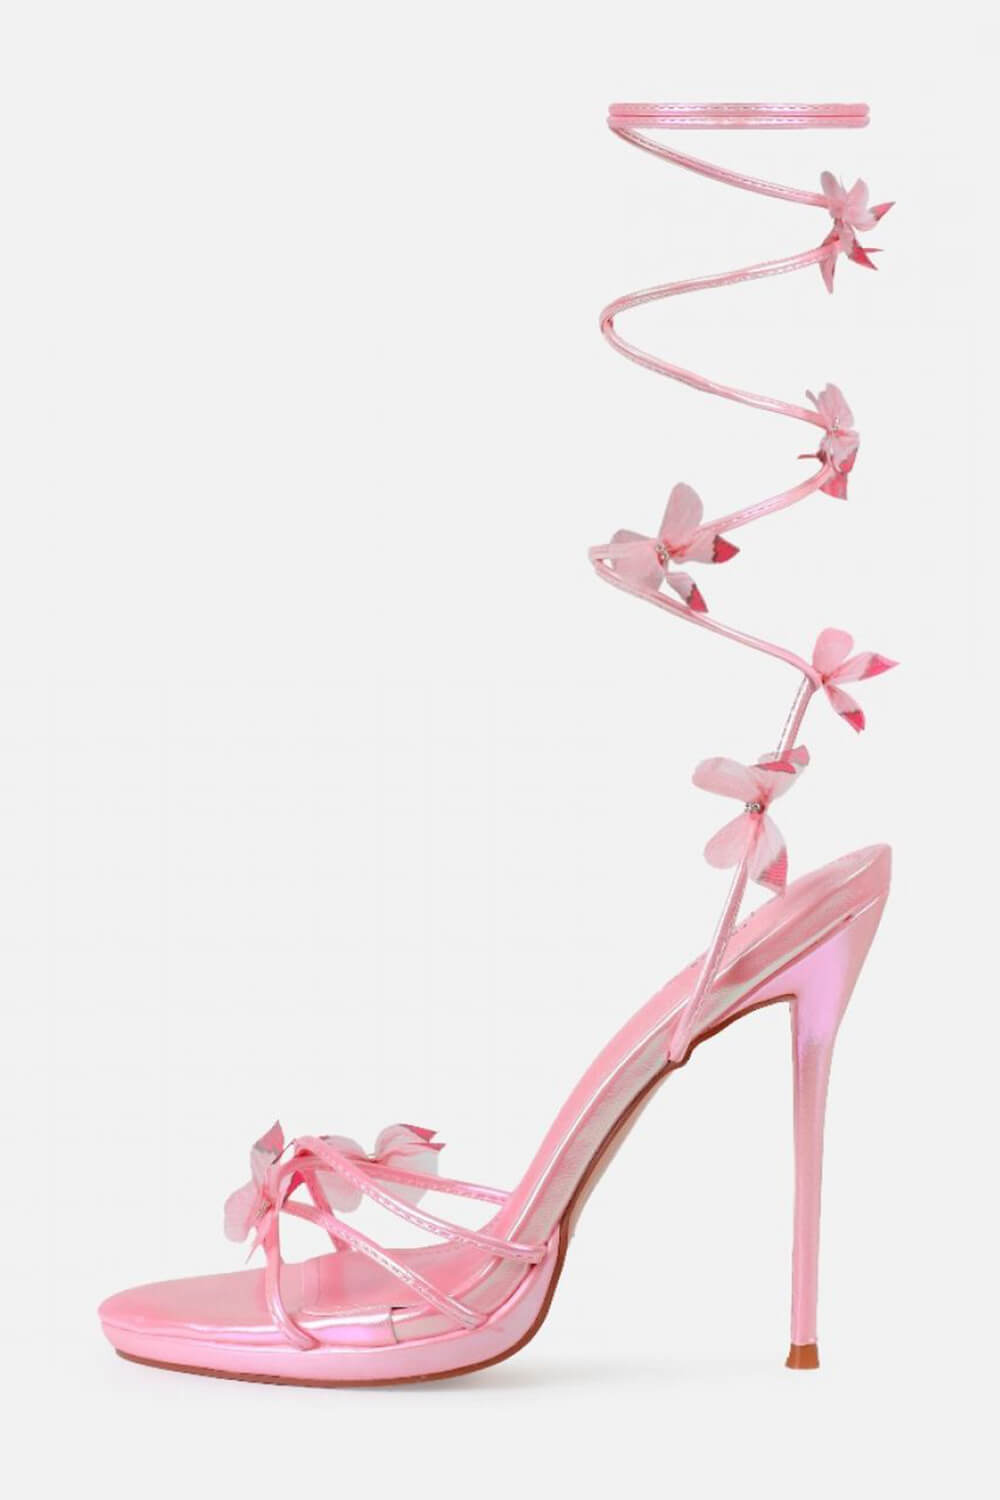 Butterfly Heel | Wedding shoes, Heels, Butterfly heels